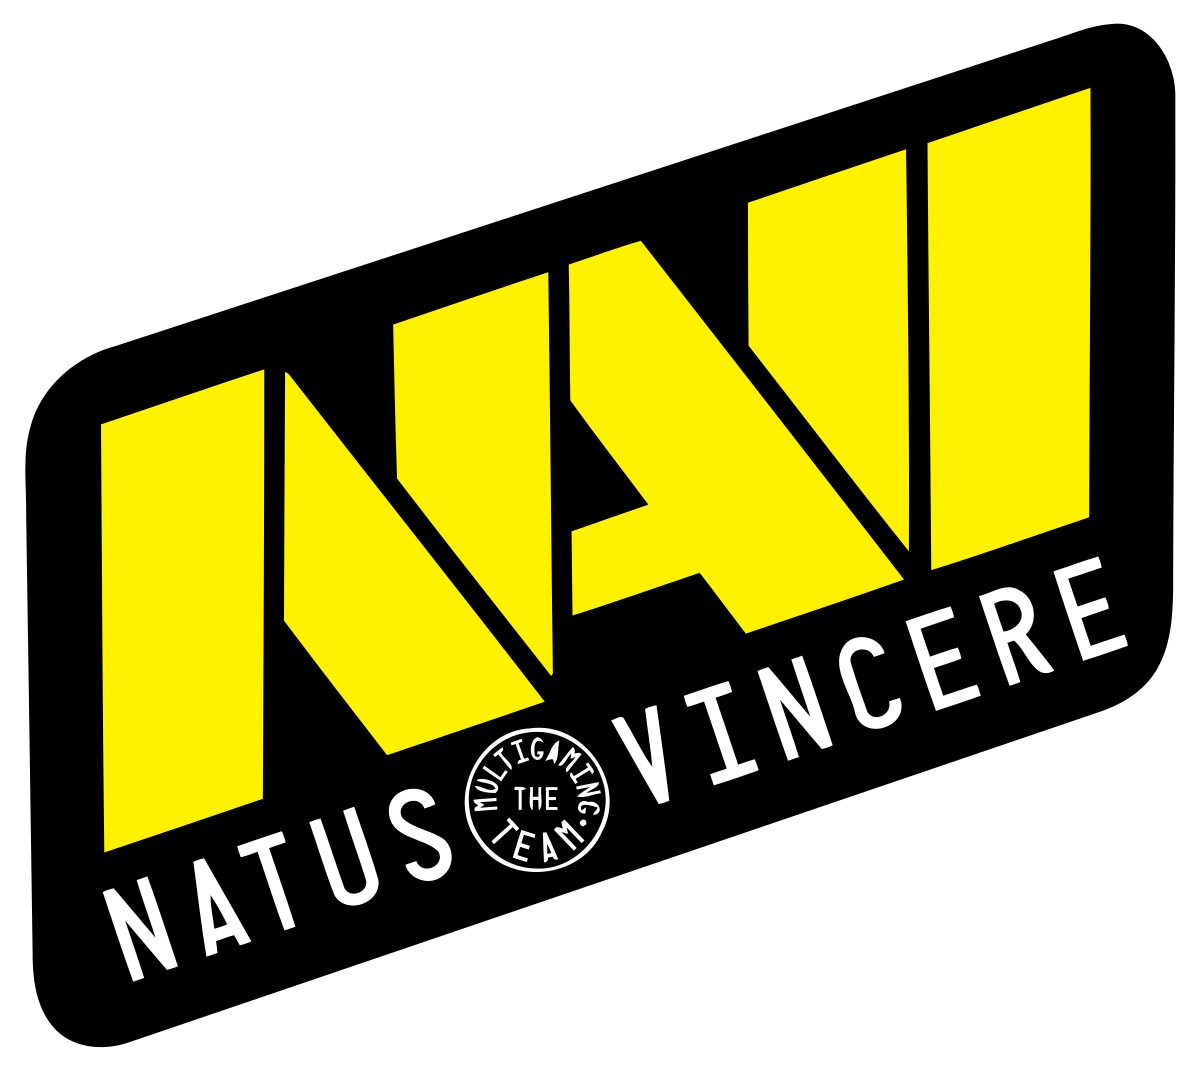 Natus Vincere обыграла ex-Team Unique в рамках первого дивизиона DPC для СНГ